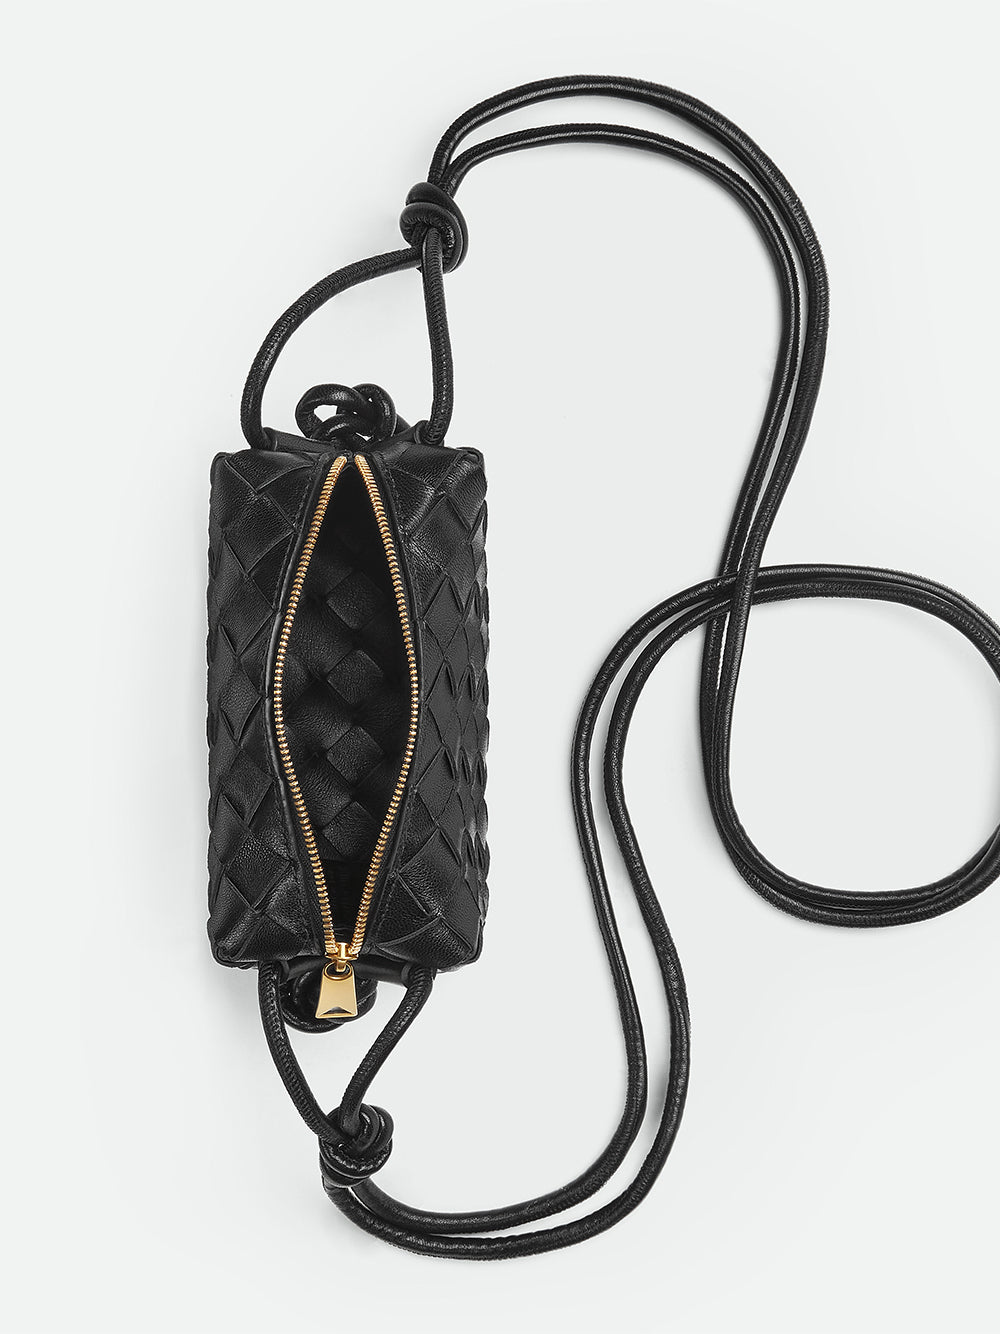 Small Loop Camera Bag in black and gold - Bottega Veneta